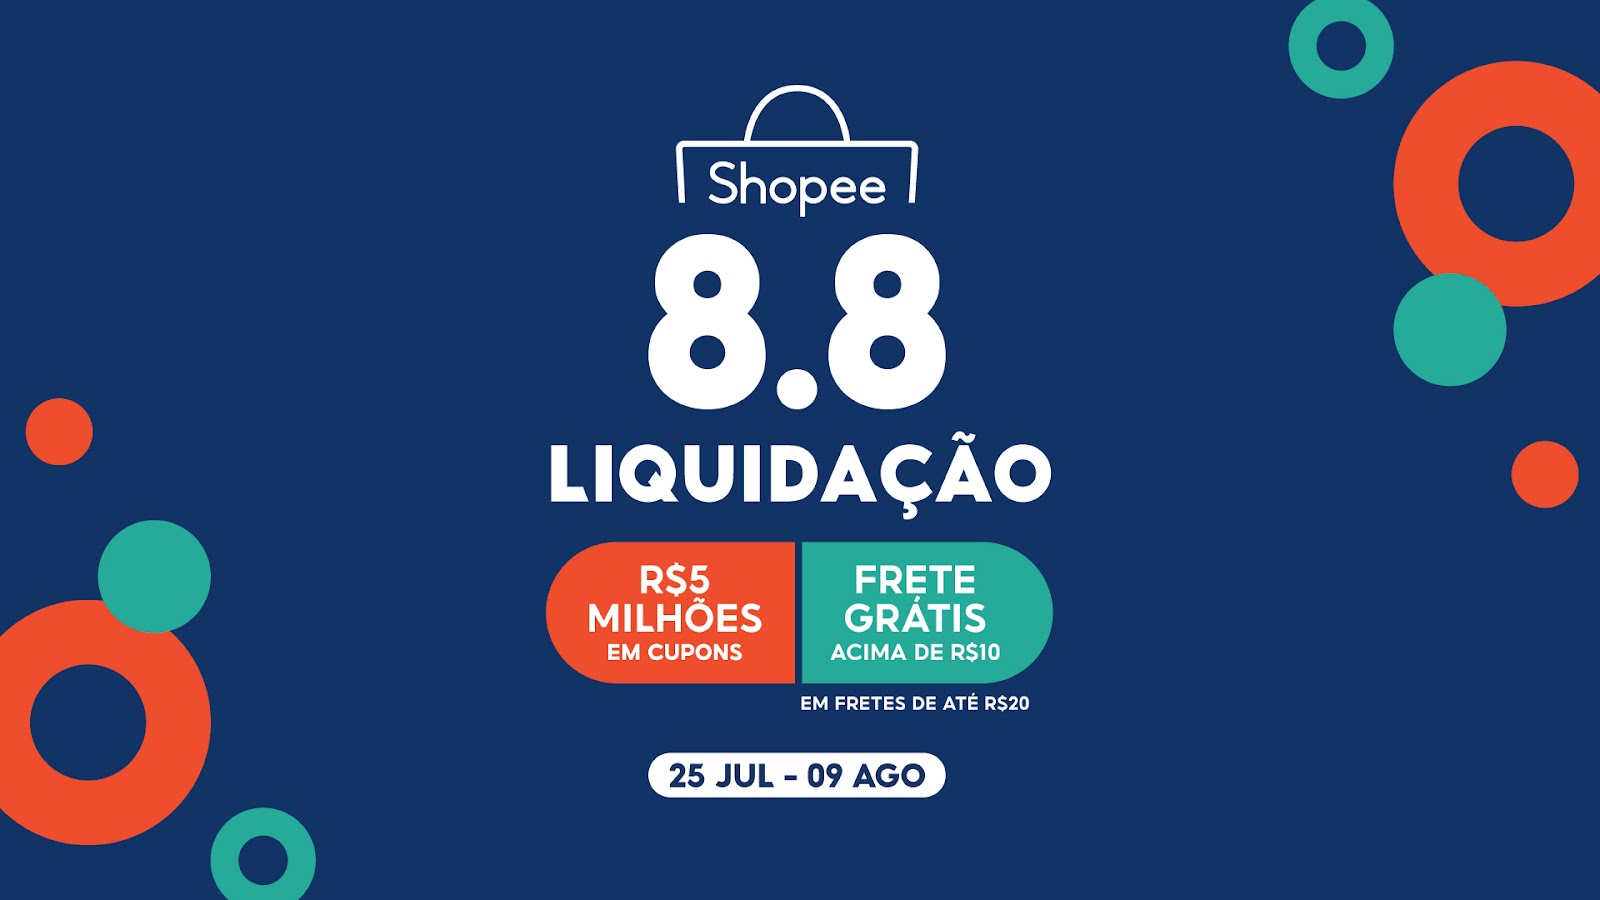 Shopee: Liquidação 8.8 tem R$ 5 milhões em cupons e frete grátis